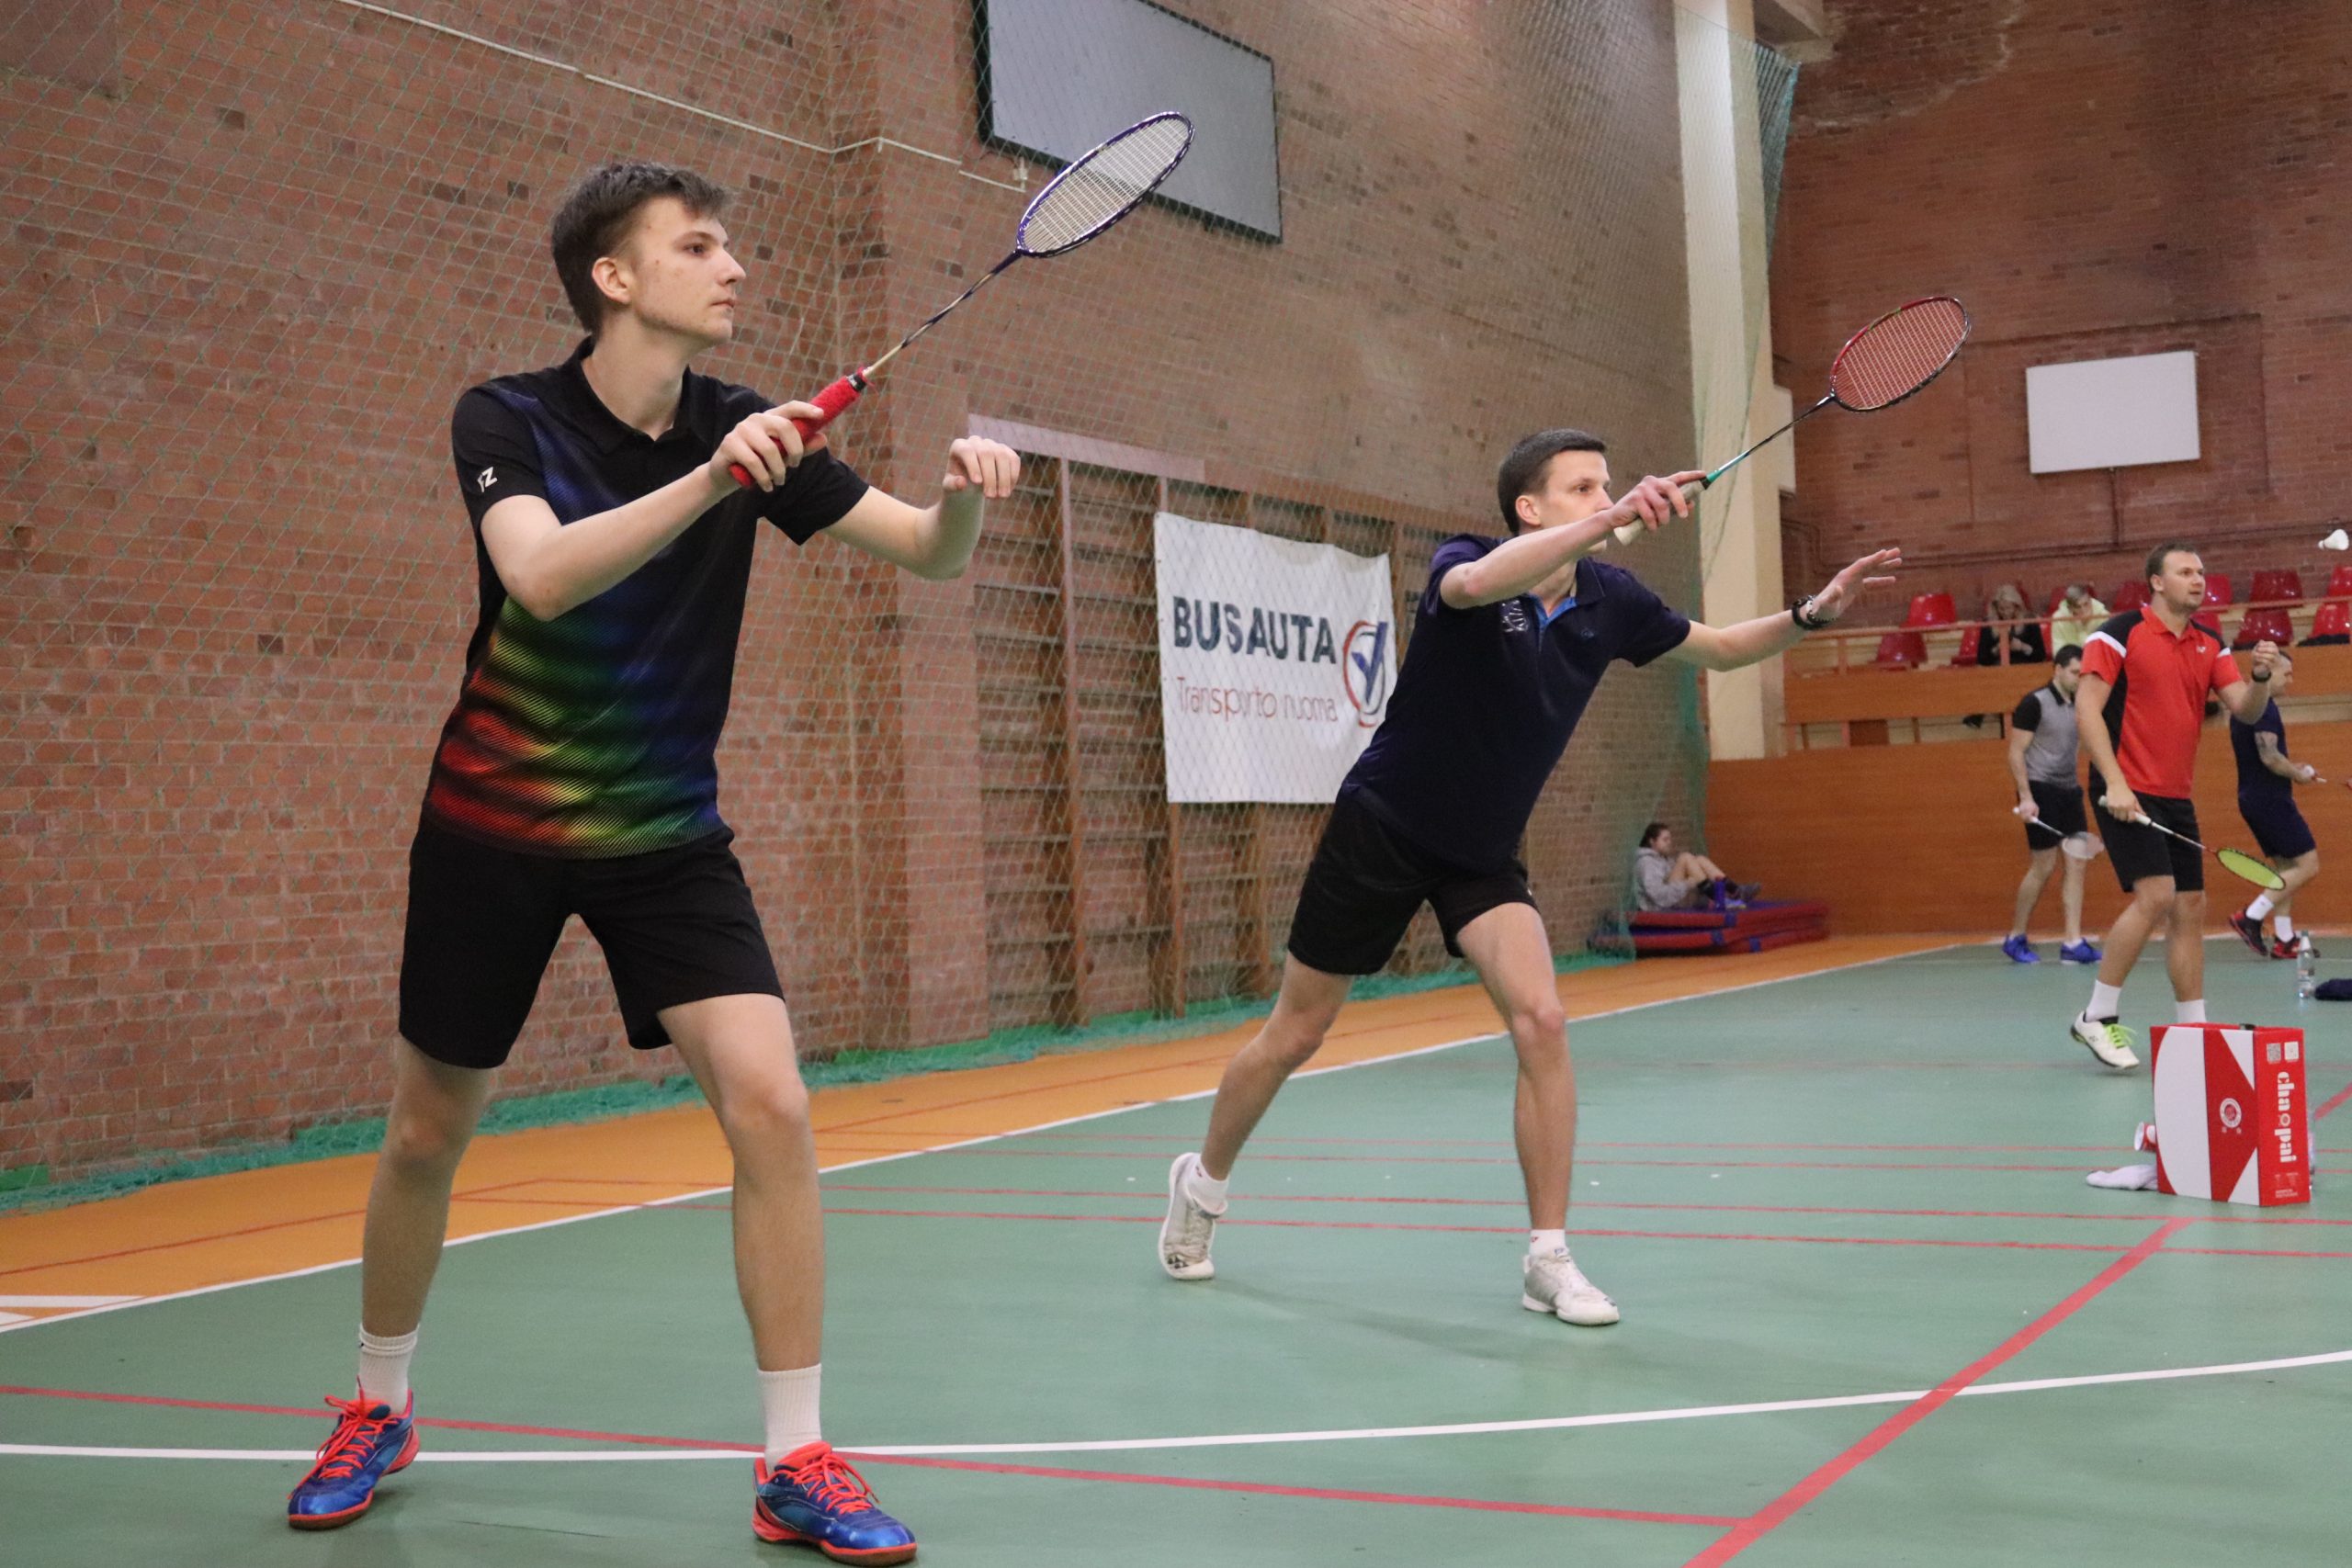 Du vaikinai studentai vilkintys juoda sportine apranga, žaidžia badmintoną badmintono aikštelėje.